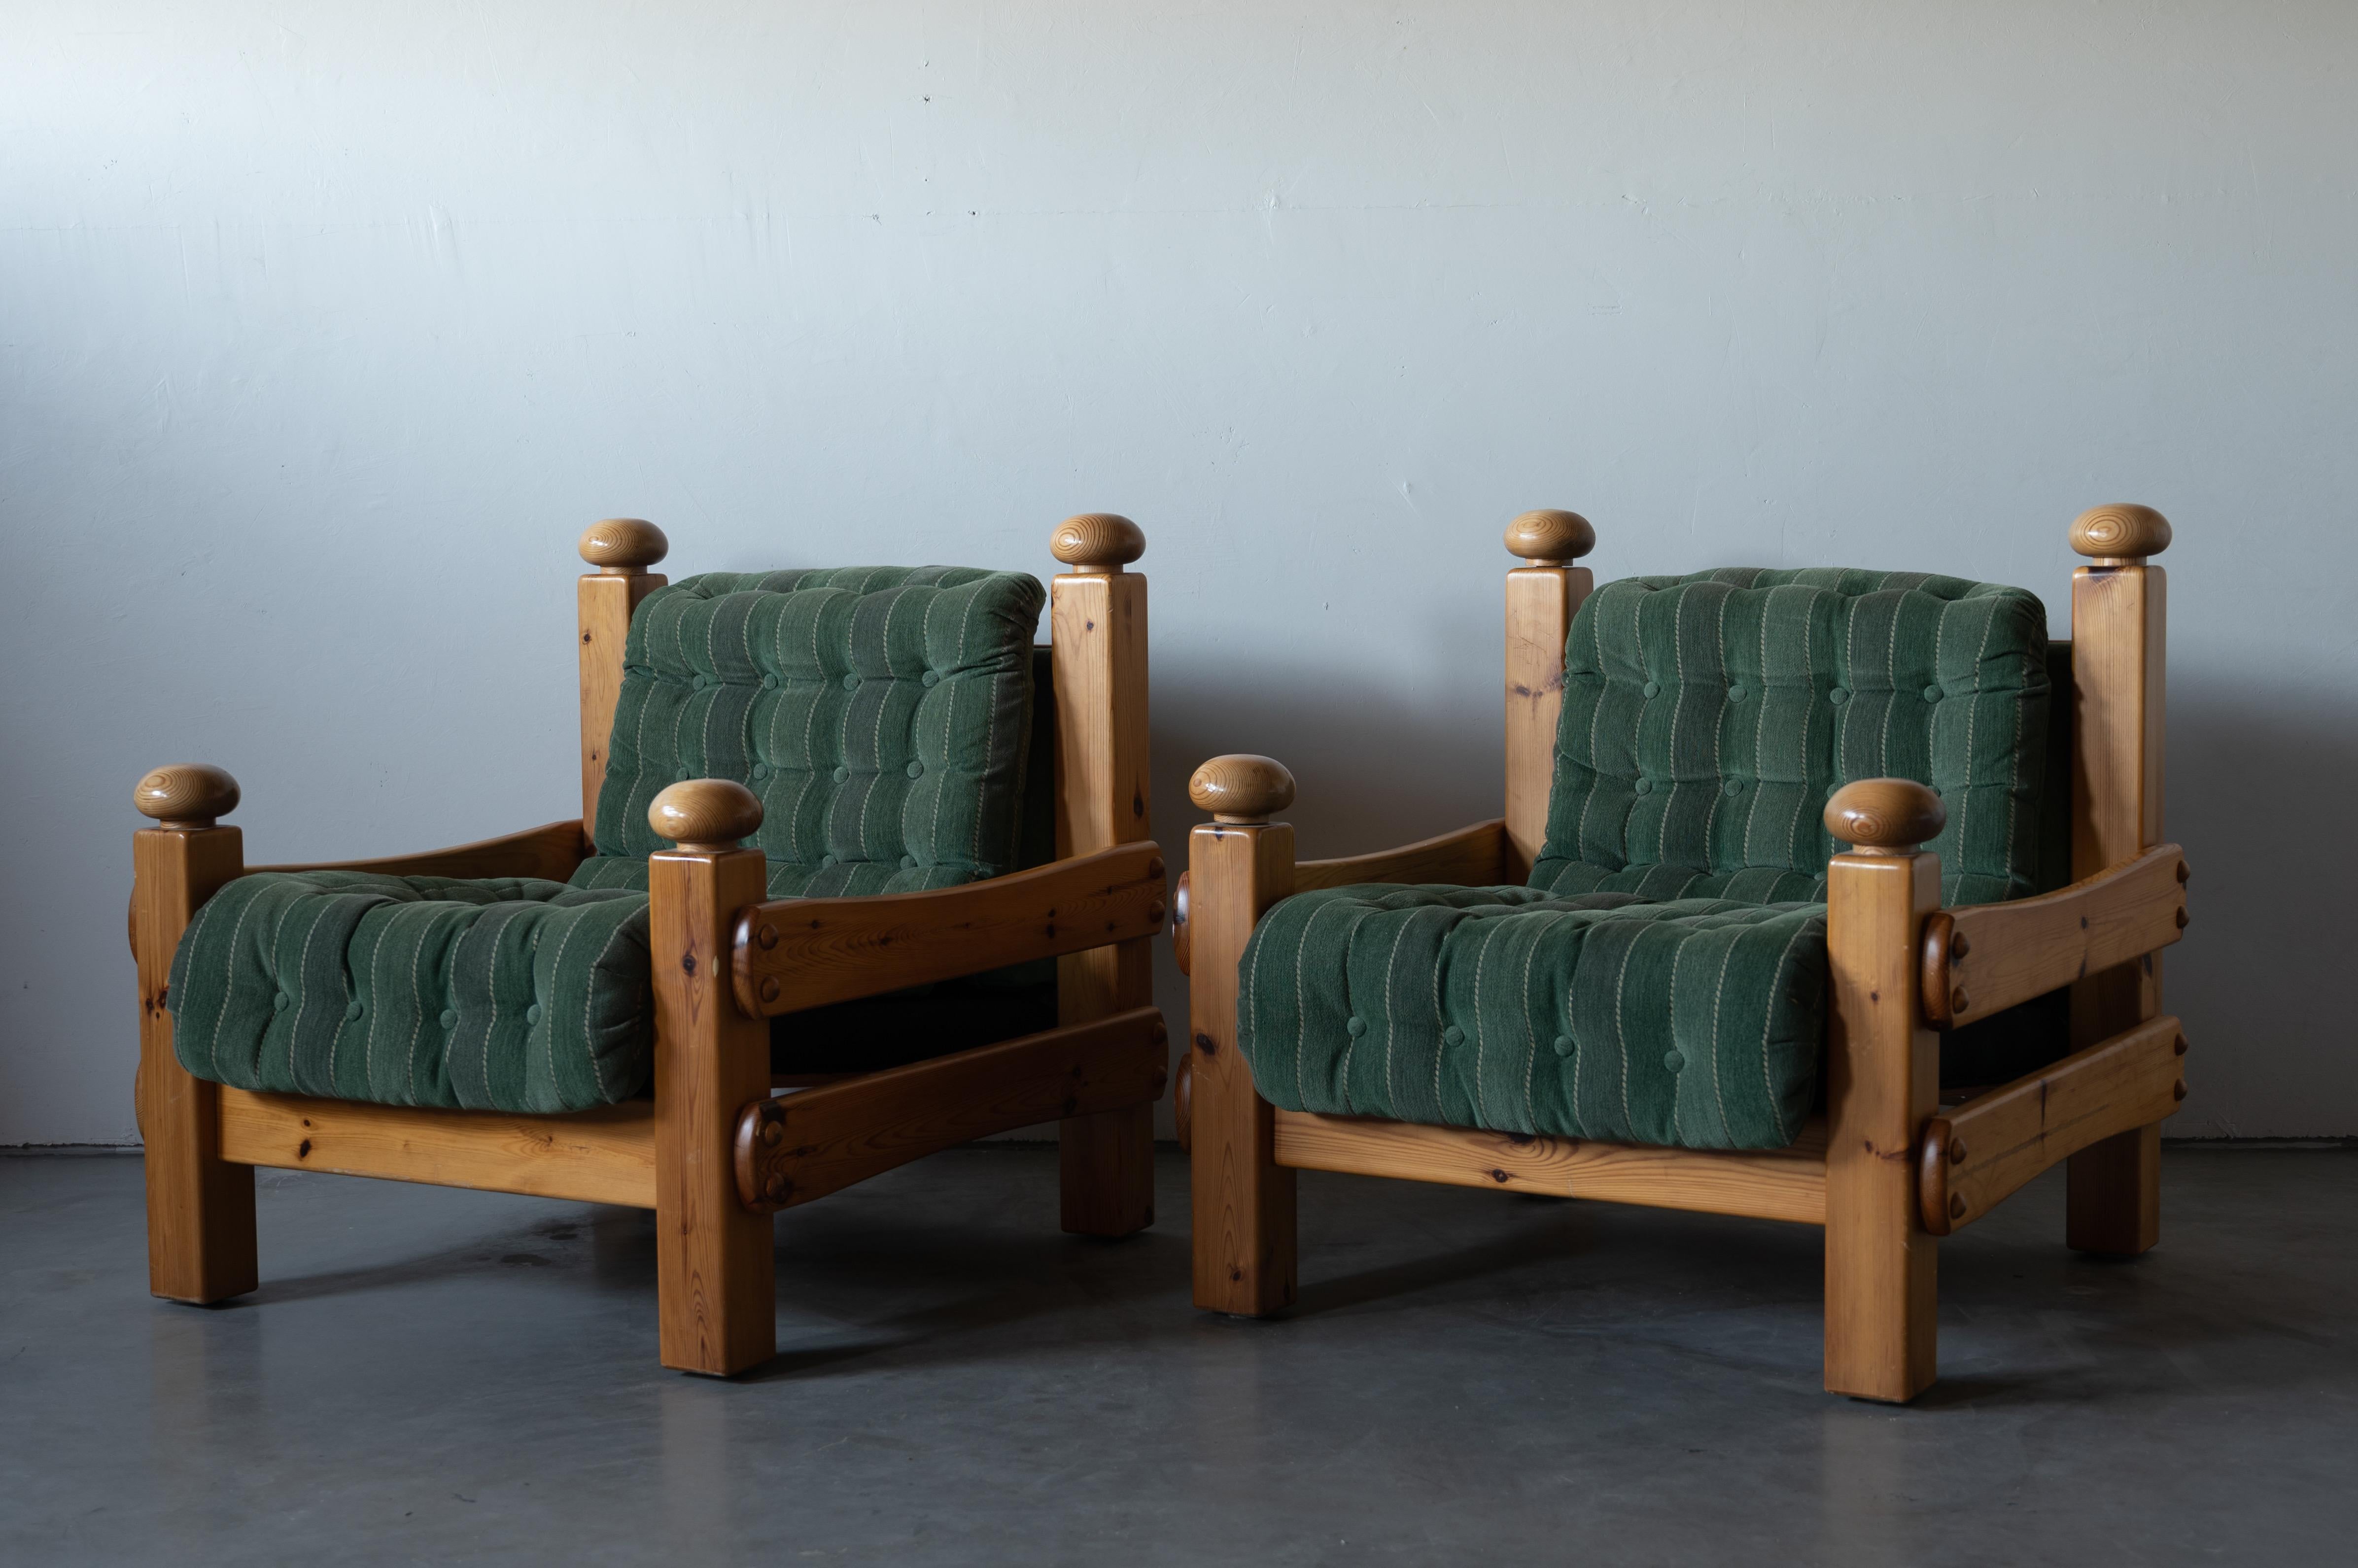 Une paire de chaises longues. Conçu et produit en Suède, dans les années 1970. Coussins rembourrés en tissu vert et munis de boutons.

Parmi les autres designers de l'époque, citons Pierre Chapo, Axel Einar Hjorth, Charlotte Perriand et George